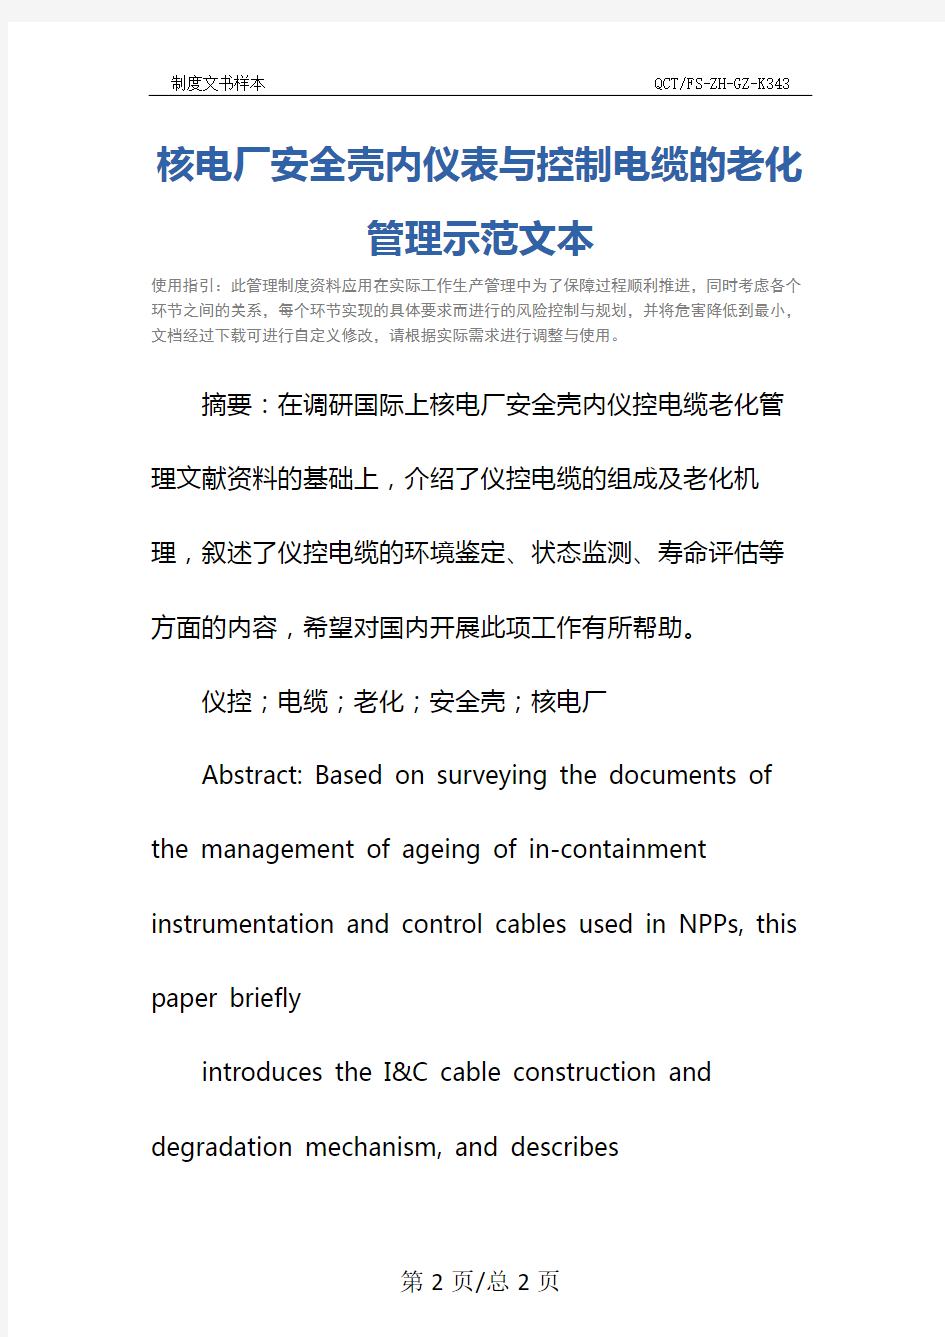 核电厂安全壳内仪表与控制电缆的老化管理示范文本